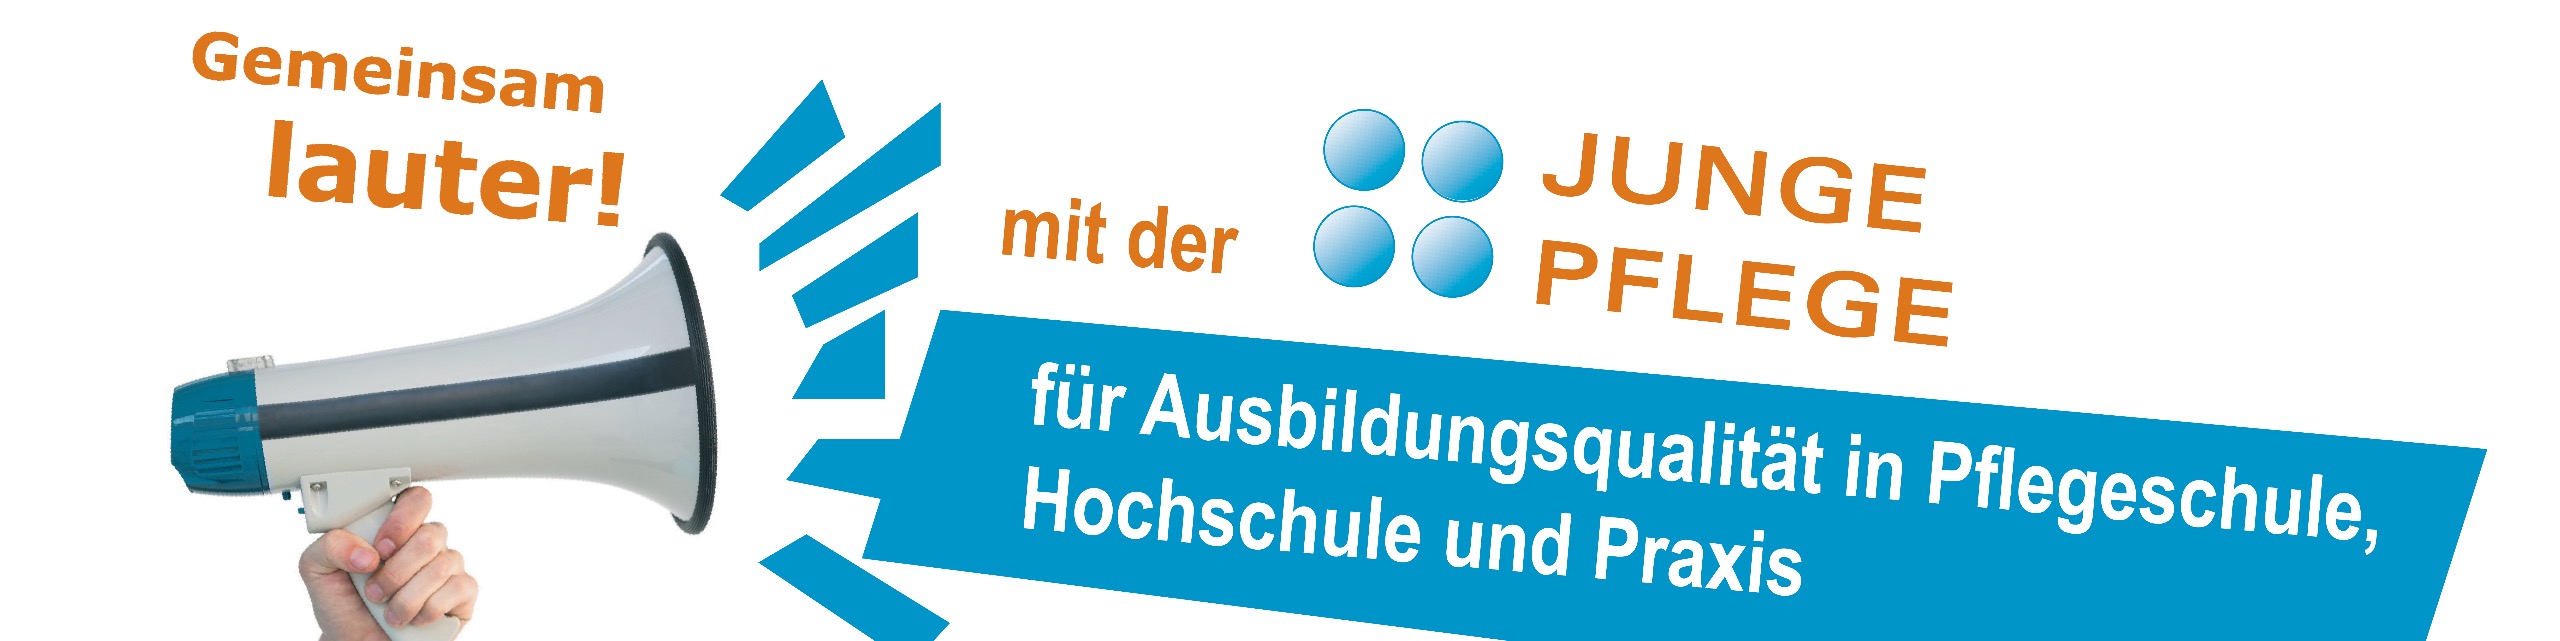 Gemeinsam lauter! mit der AG JUNGE PFLEGE +  für Ausbildungsqualität in Pflegeschule, Hochschule und Praxis